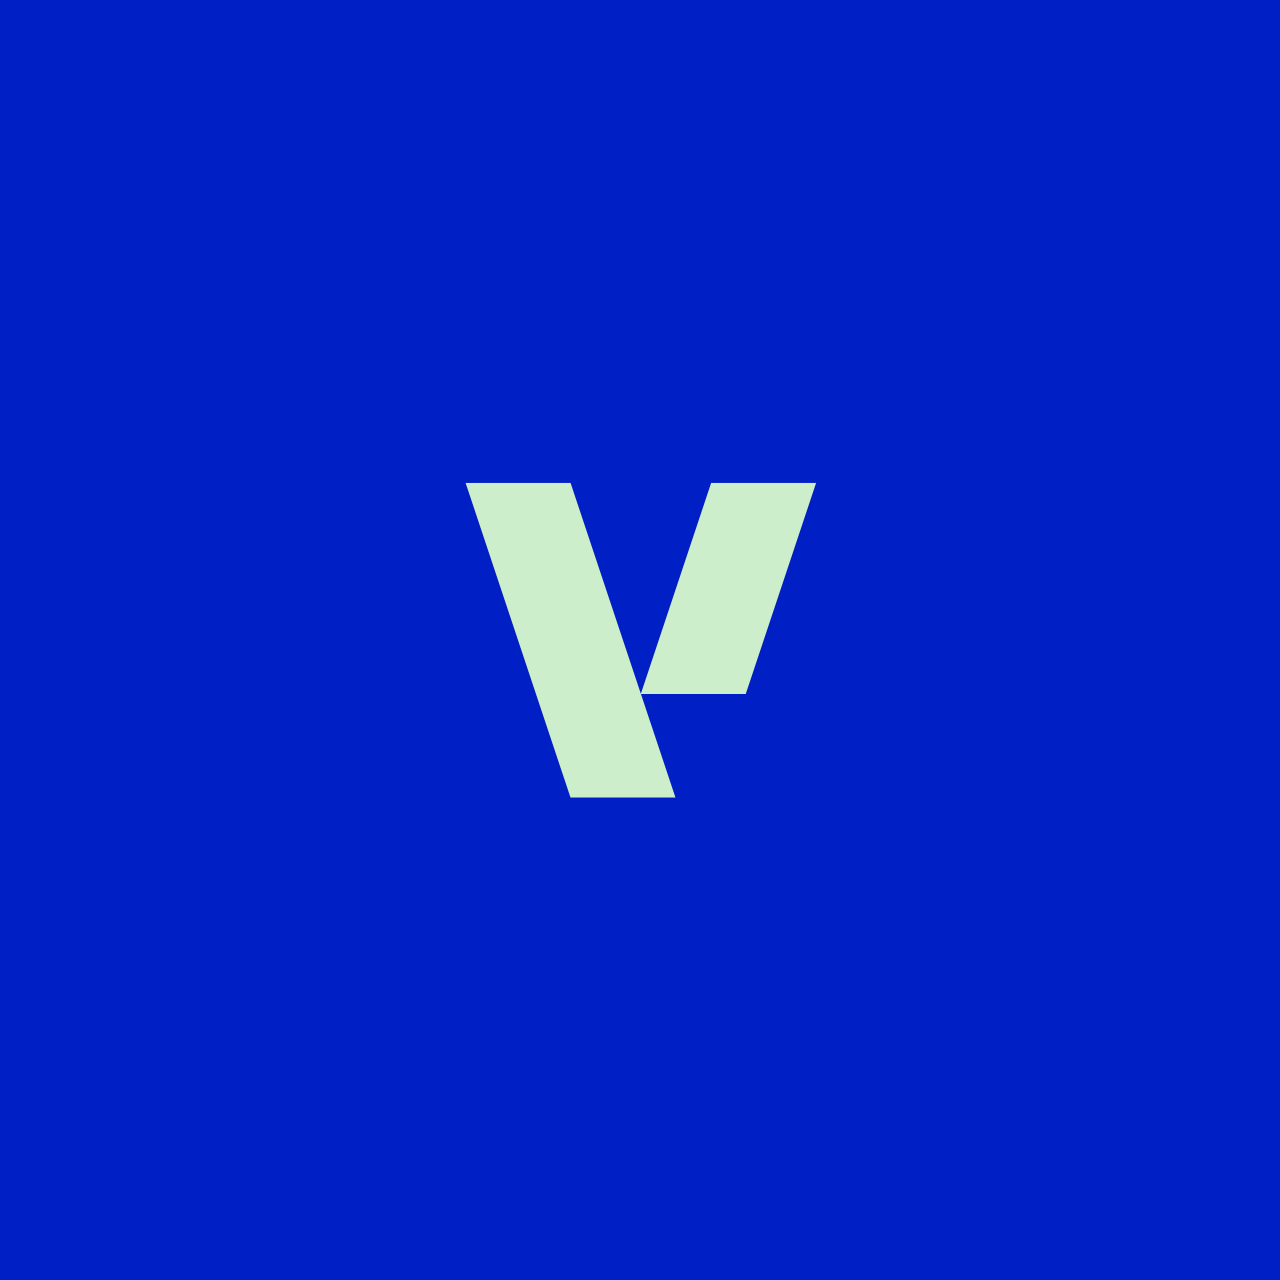 Vasakronan logo